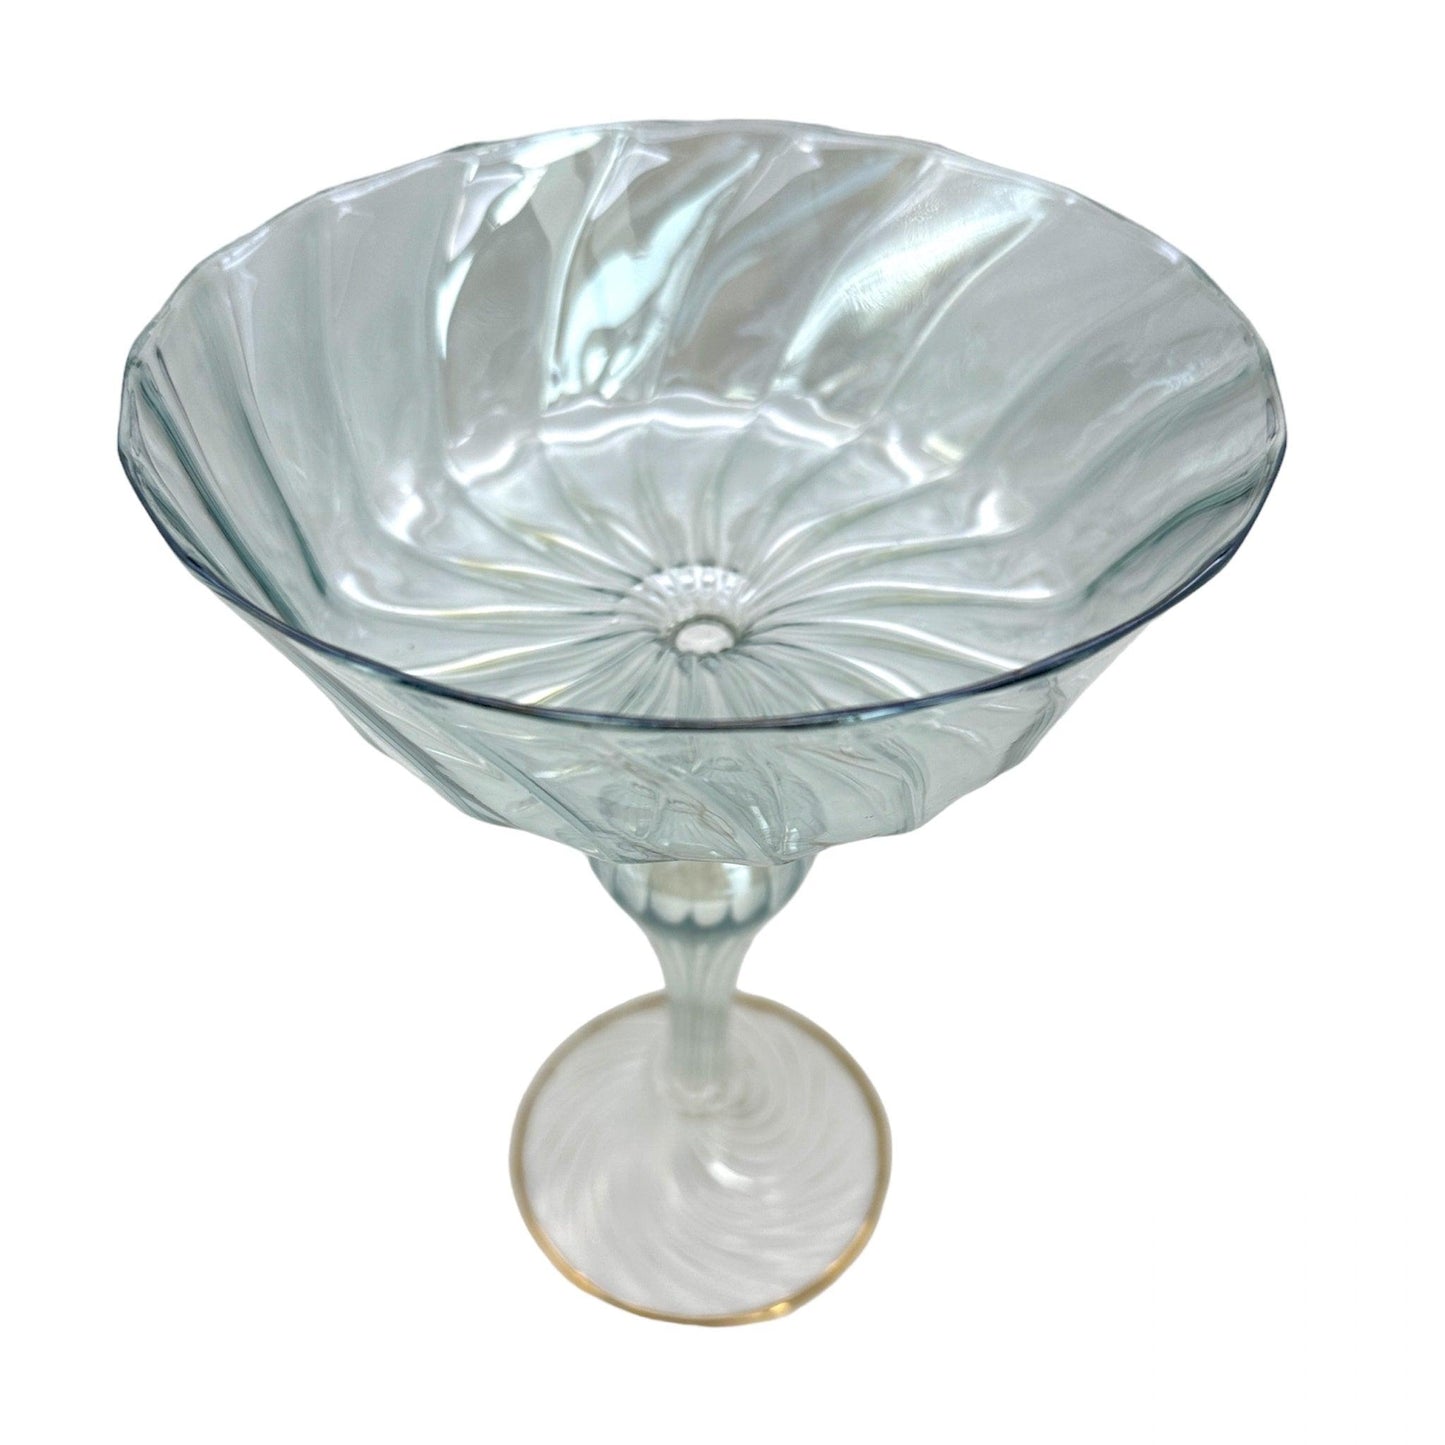 Venetian Vintage Glass Compote Tazza | Ornamental Glassware Collectible